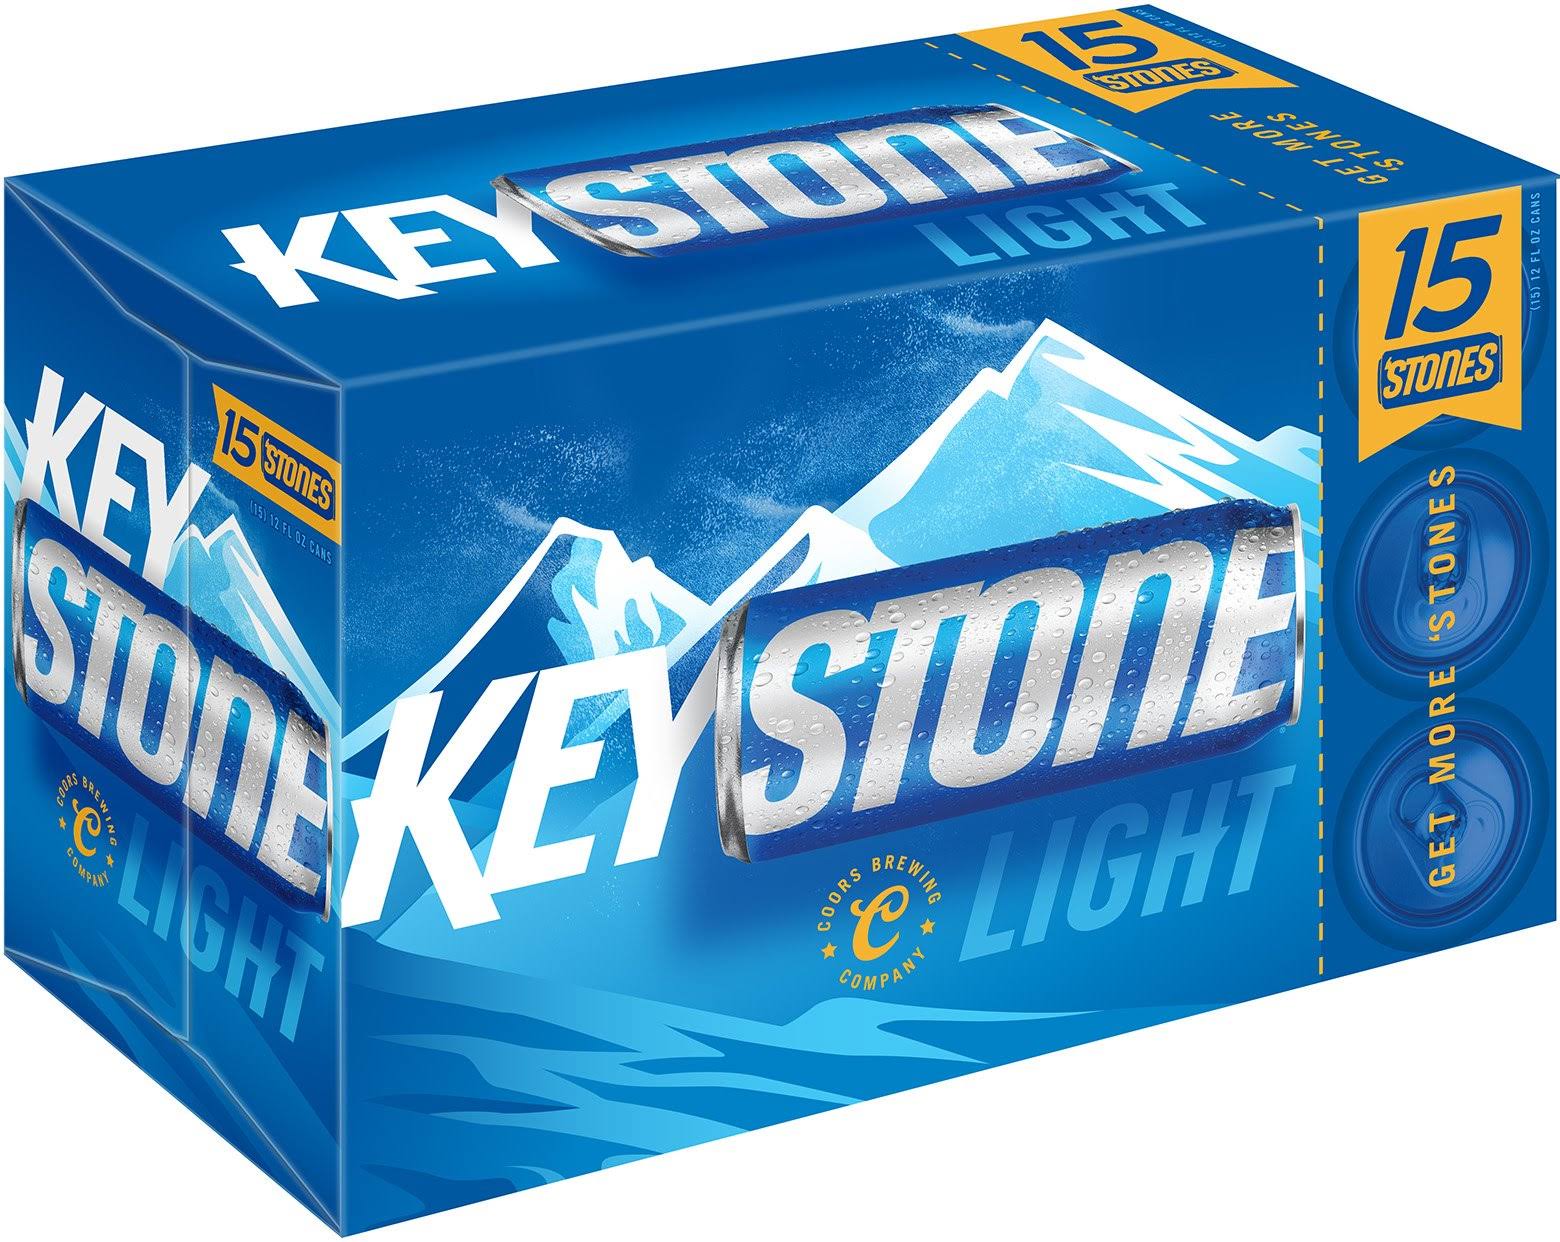 Keystone Beer, Light - 15 pack, 12 fl oz cans